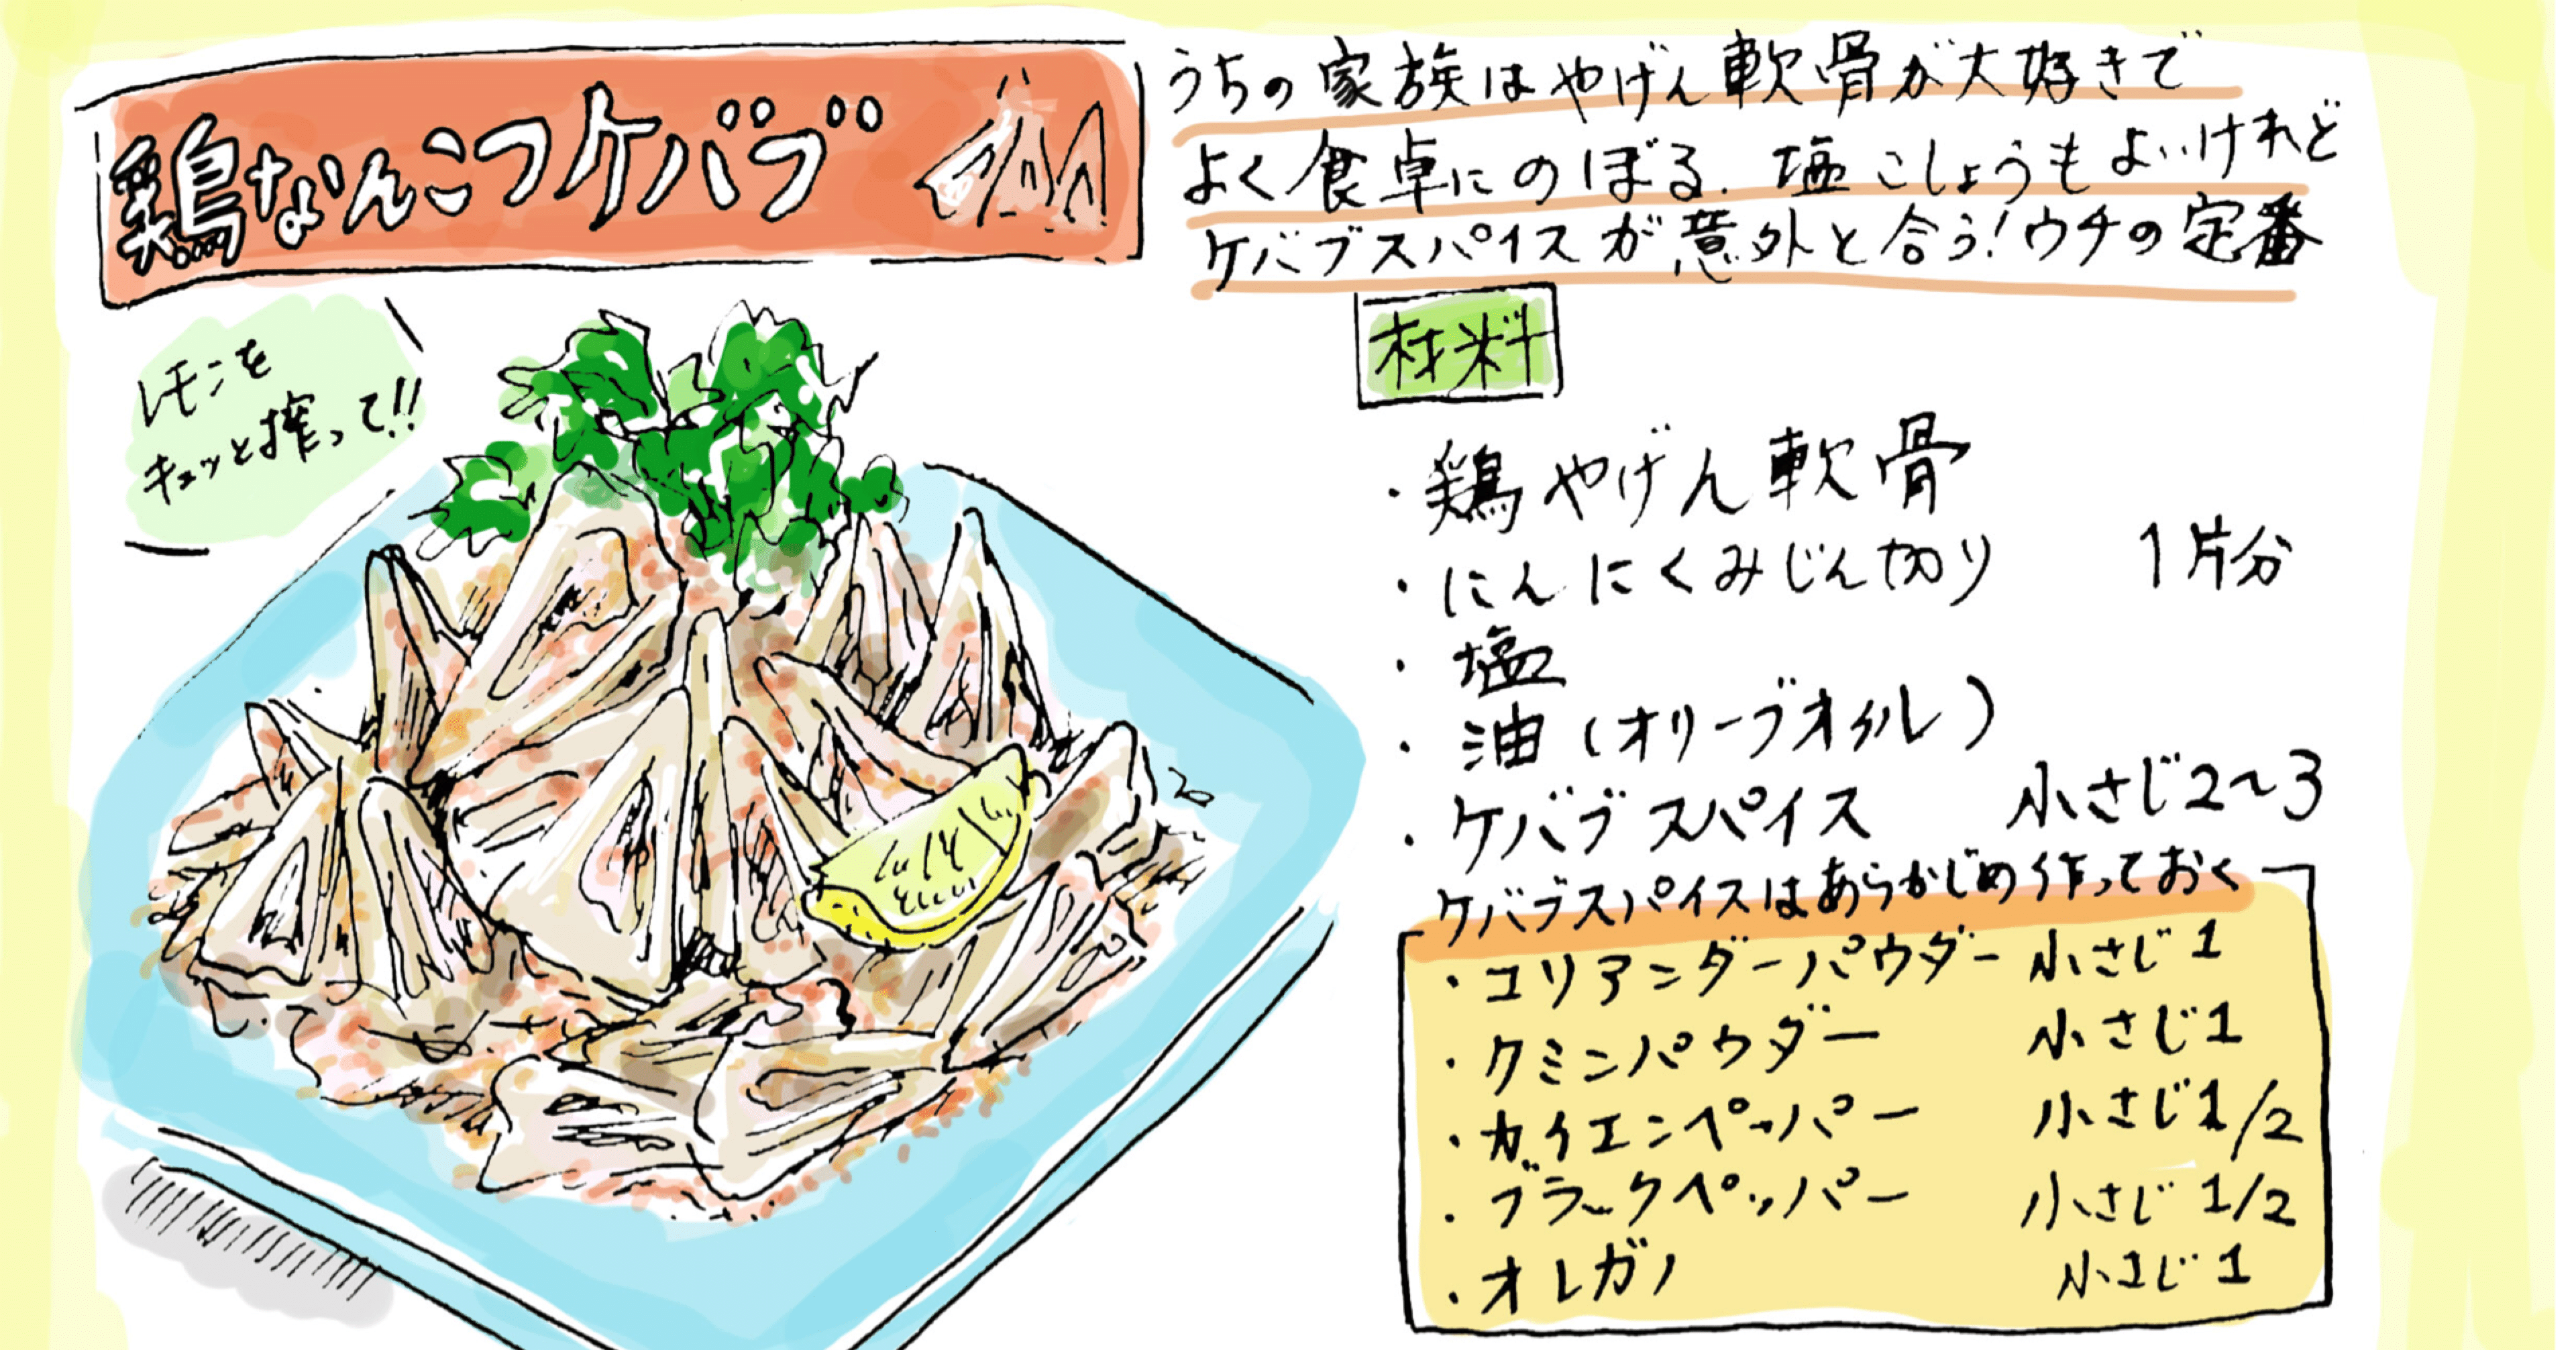 思い出レシピ 鶏なんこつケバブ 豚バラキャベツ焼き飯 Misa Okubo イラストレシピ Note